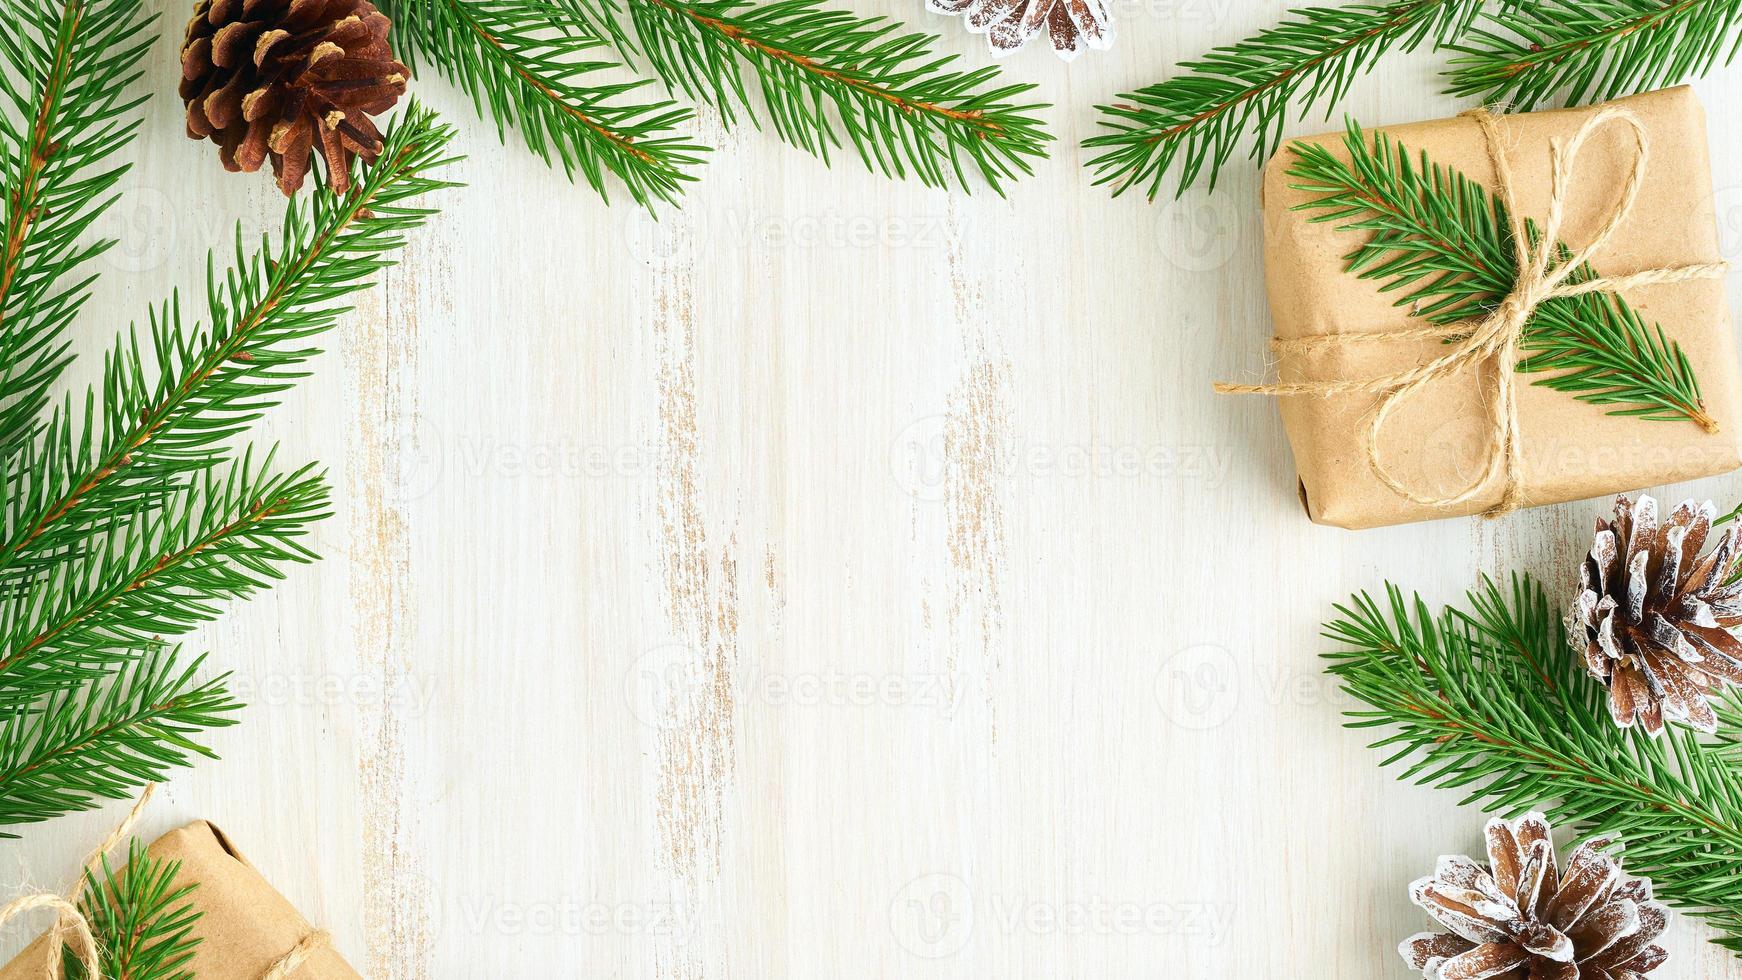 navidad y feliz año nuevo telón de fondo de madera sin desperdicio. caja de navidad de regalo hecha a mano, ramas de abeto, papel artesanal, vista superior, espacio de copia. concepto libre de plástico ecológico foto